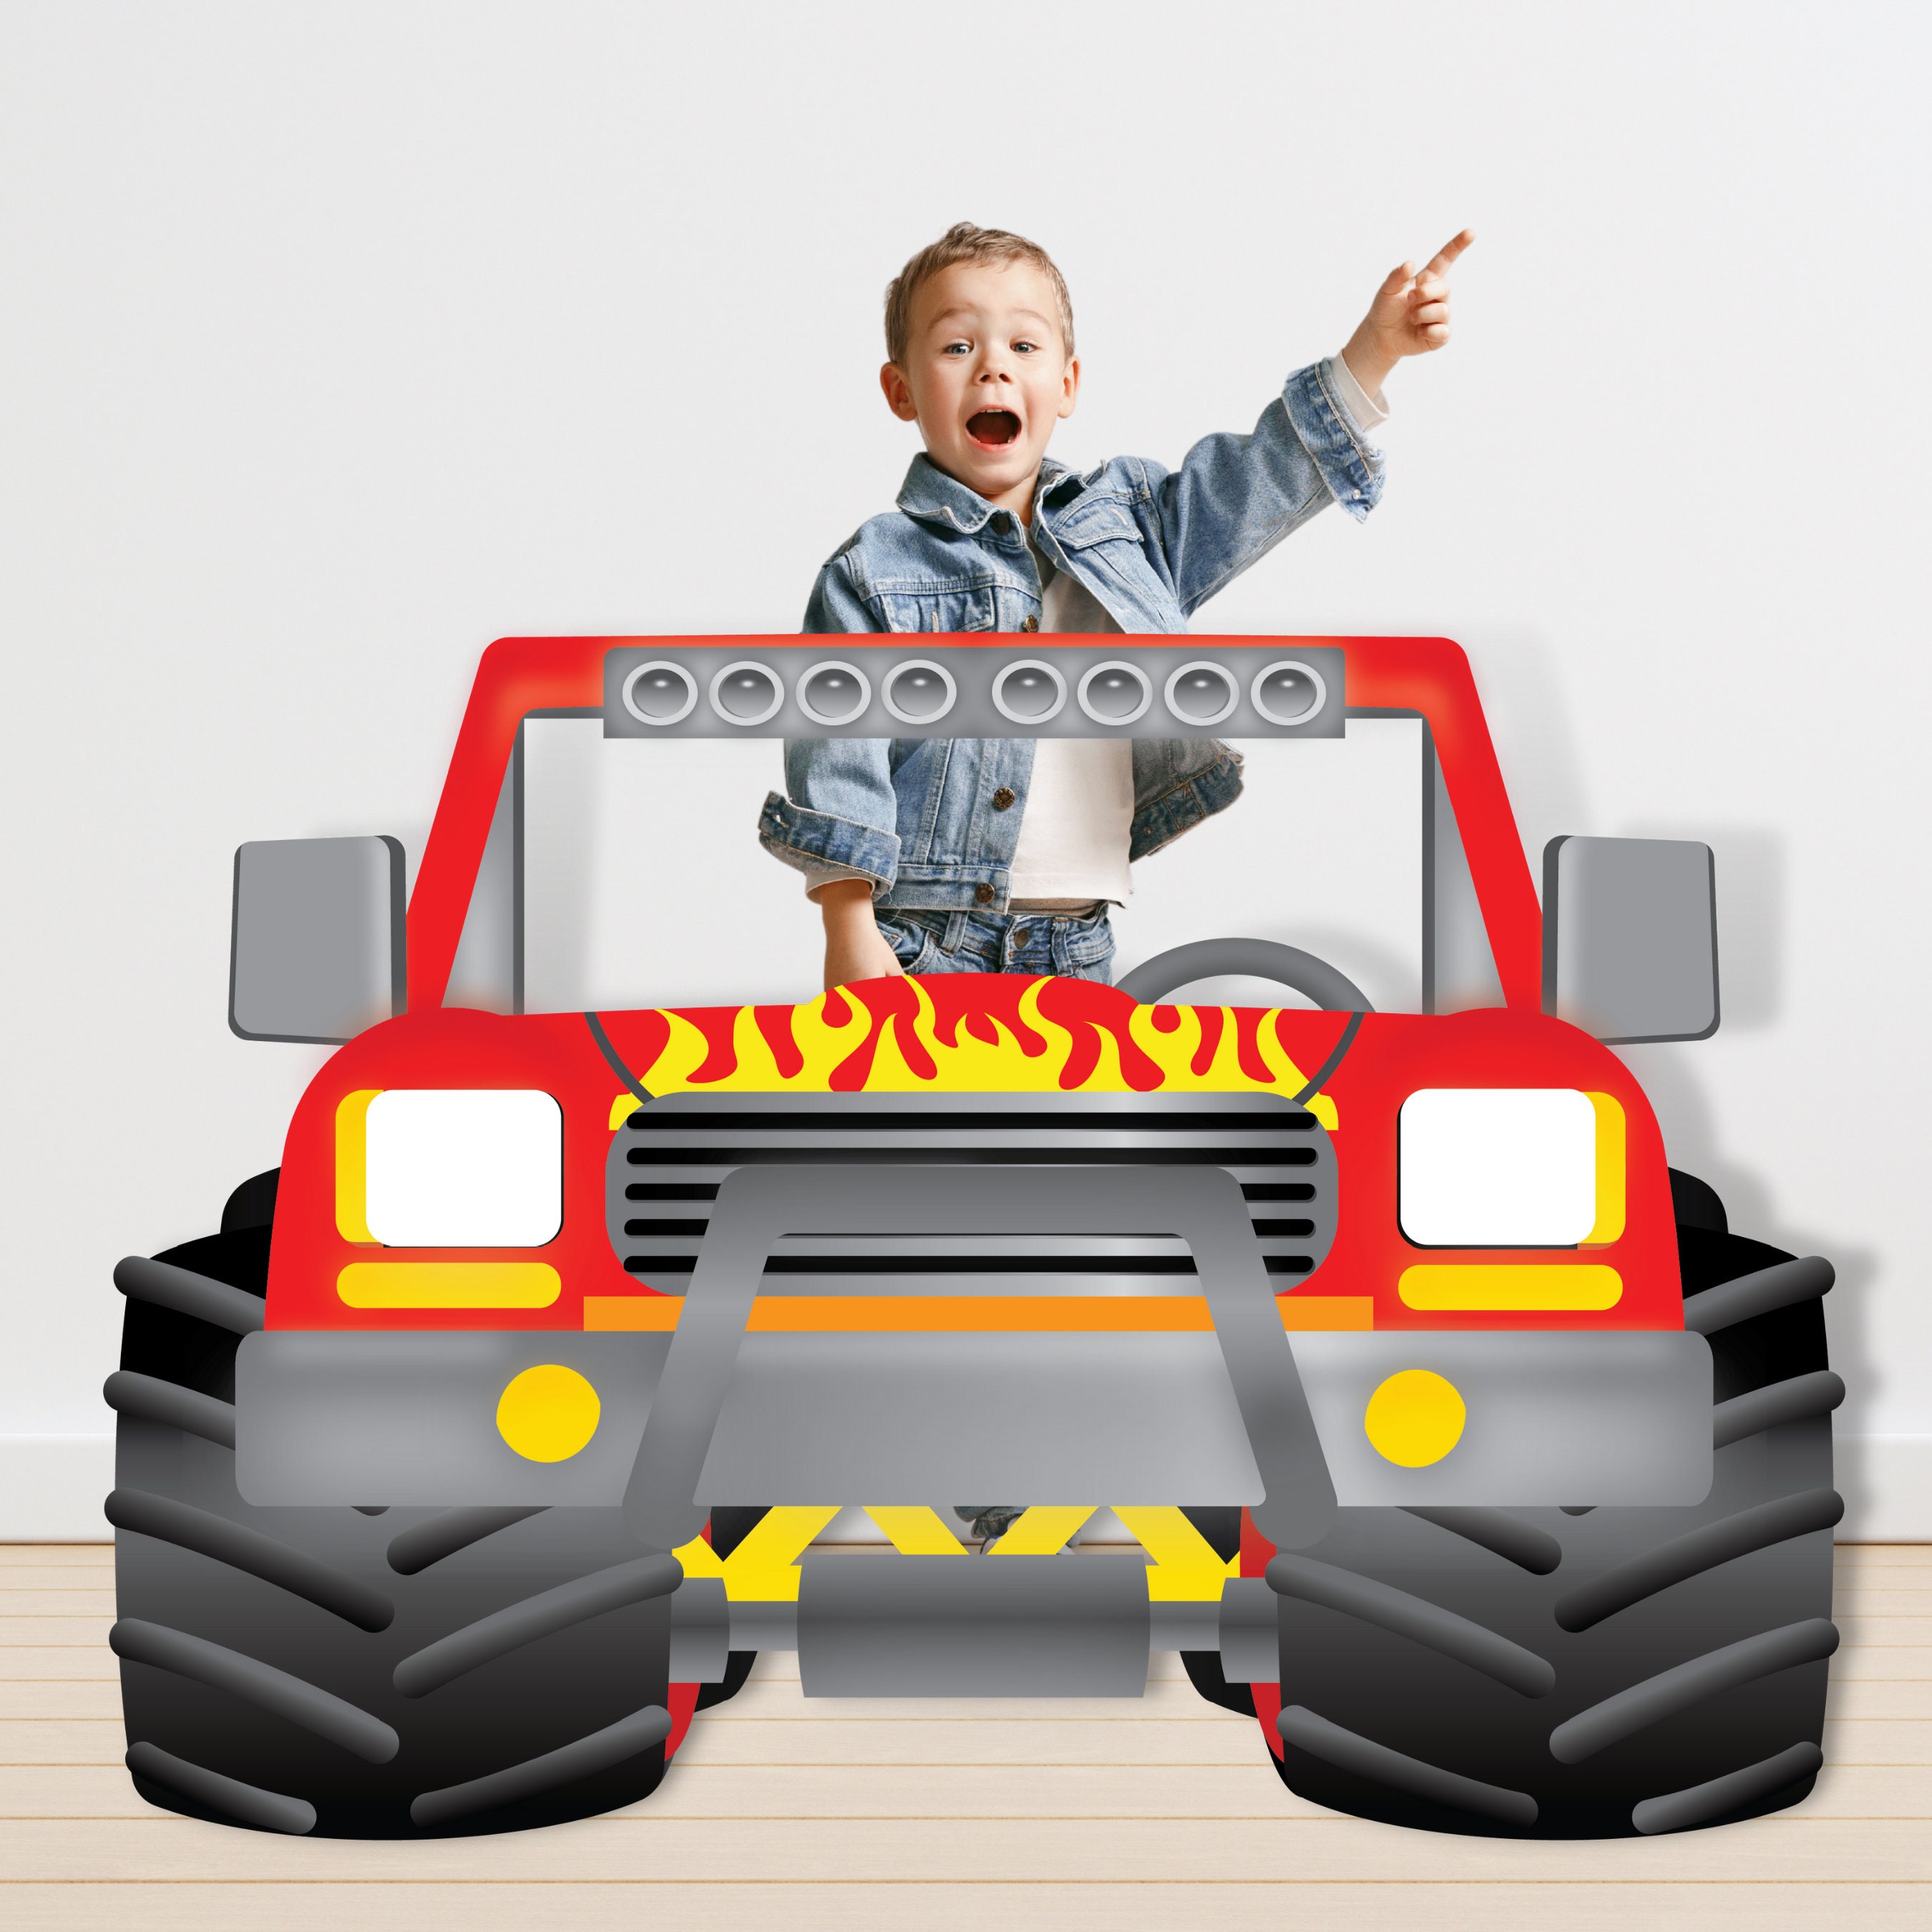 Monster Jam Monster Trucks in the Mud Car Wash Video for Children